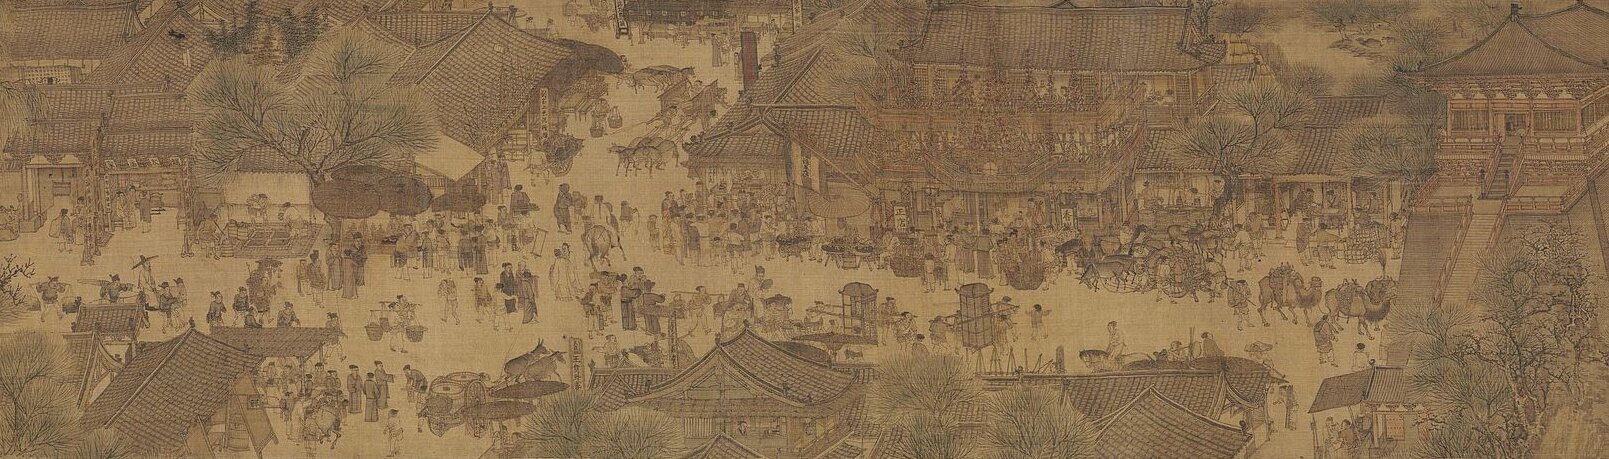 Chińska ilustracja, przedstawiająca widok na targ w wiosce. Tłum ludzi, konne zaprzęgi i wozy przemieszczają się centralną arterią wioski, składającej się z domostw ze spadzistymi dachami i domów w formie chińskiej pagody. W centralnej części ilustracji widoczna boczna droga, narysowana ku górnej części ilustracji, łącząca się z tą przecinającą centrum ilustracji. 